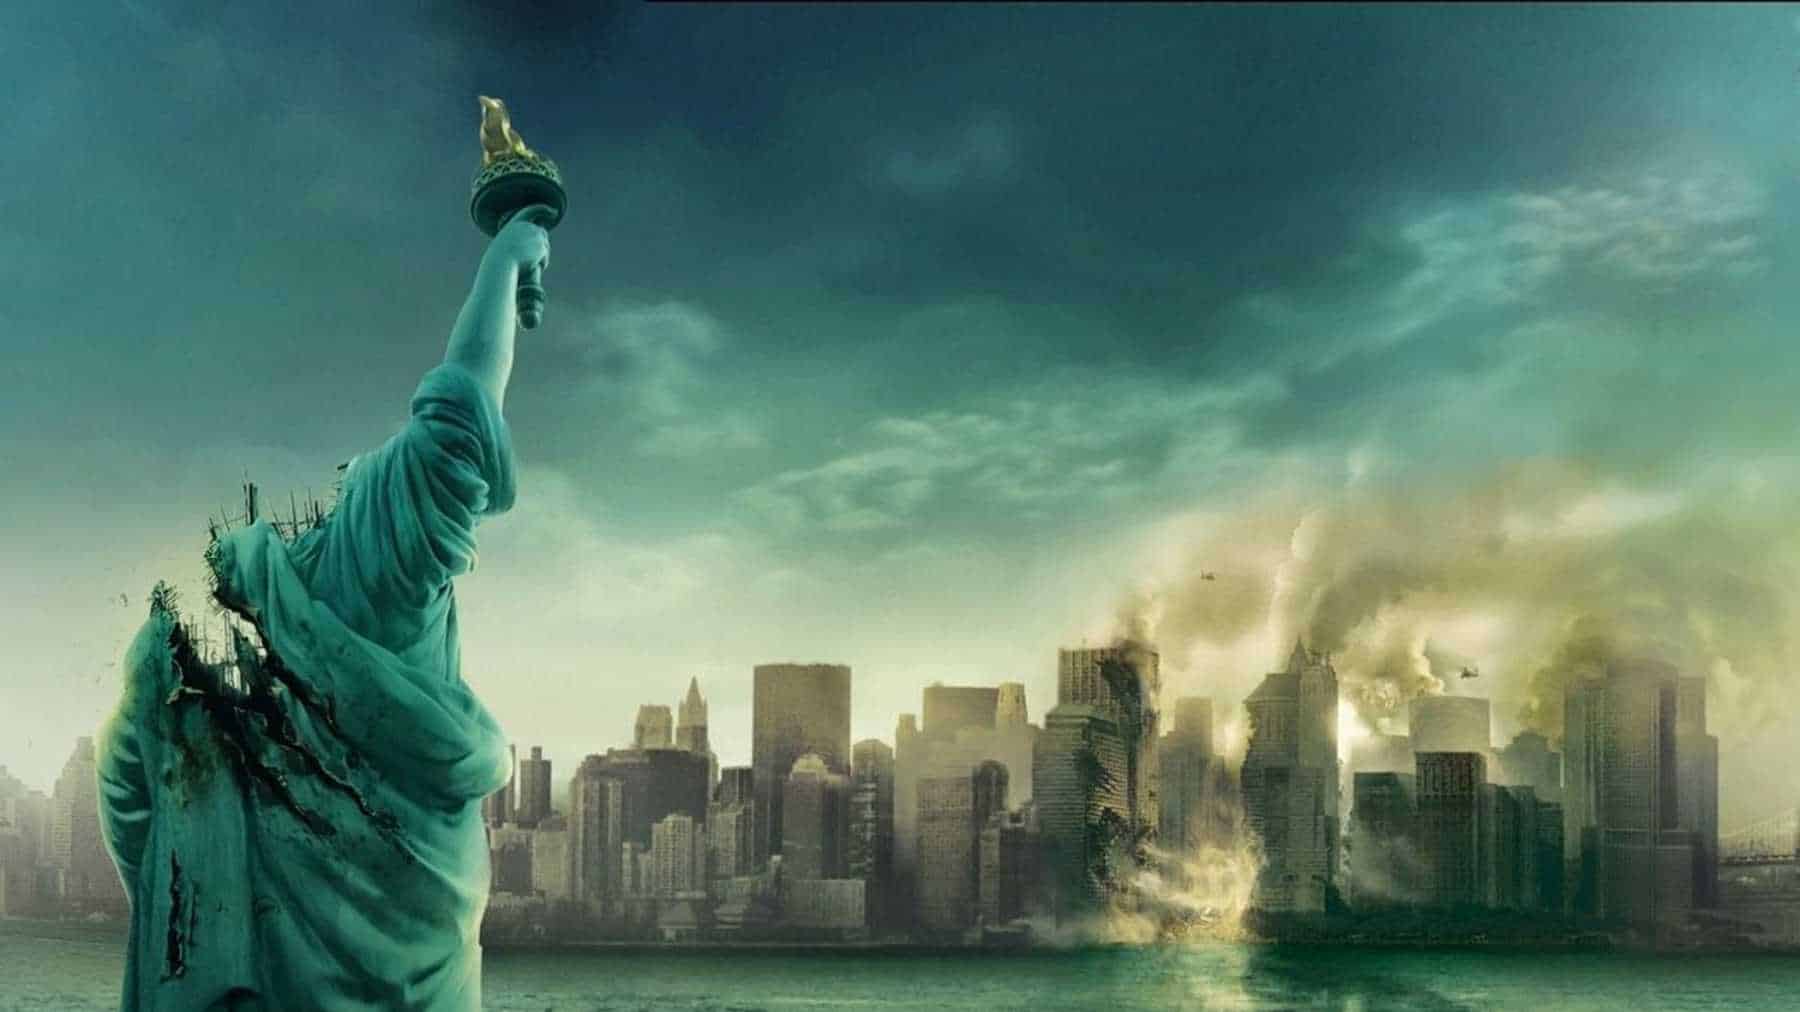 Cloverfield Filmauschnitt eines brennden New York und der Freiheitsstaute ohne Kopf